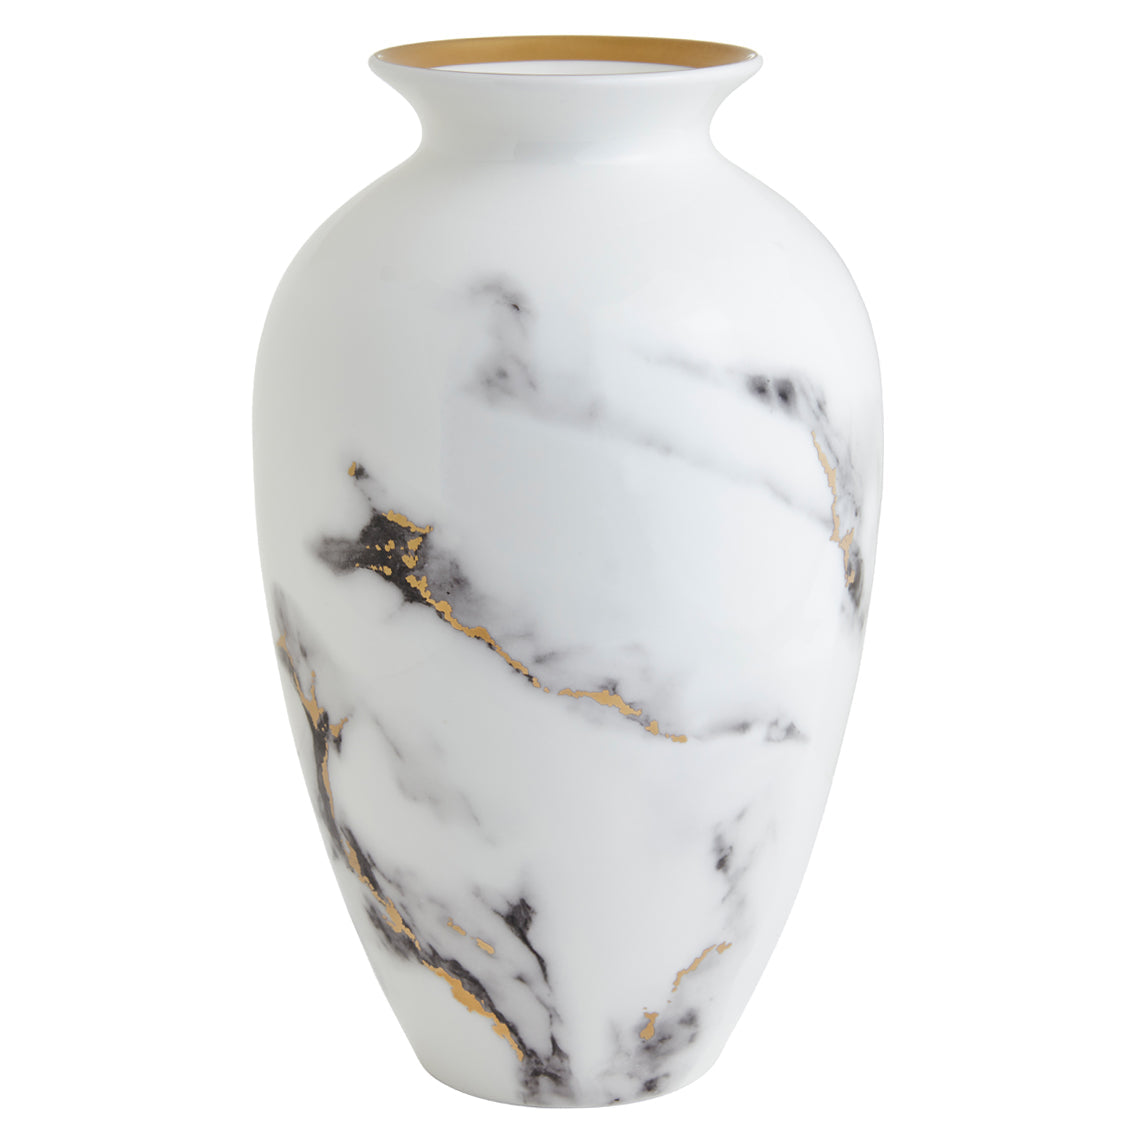 Prouna Marble Venice Fog 12" Urn Vase White Background Photo